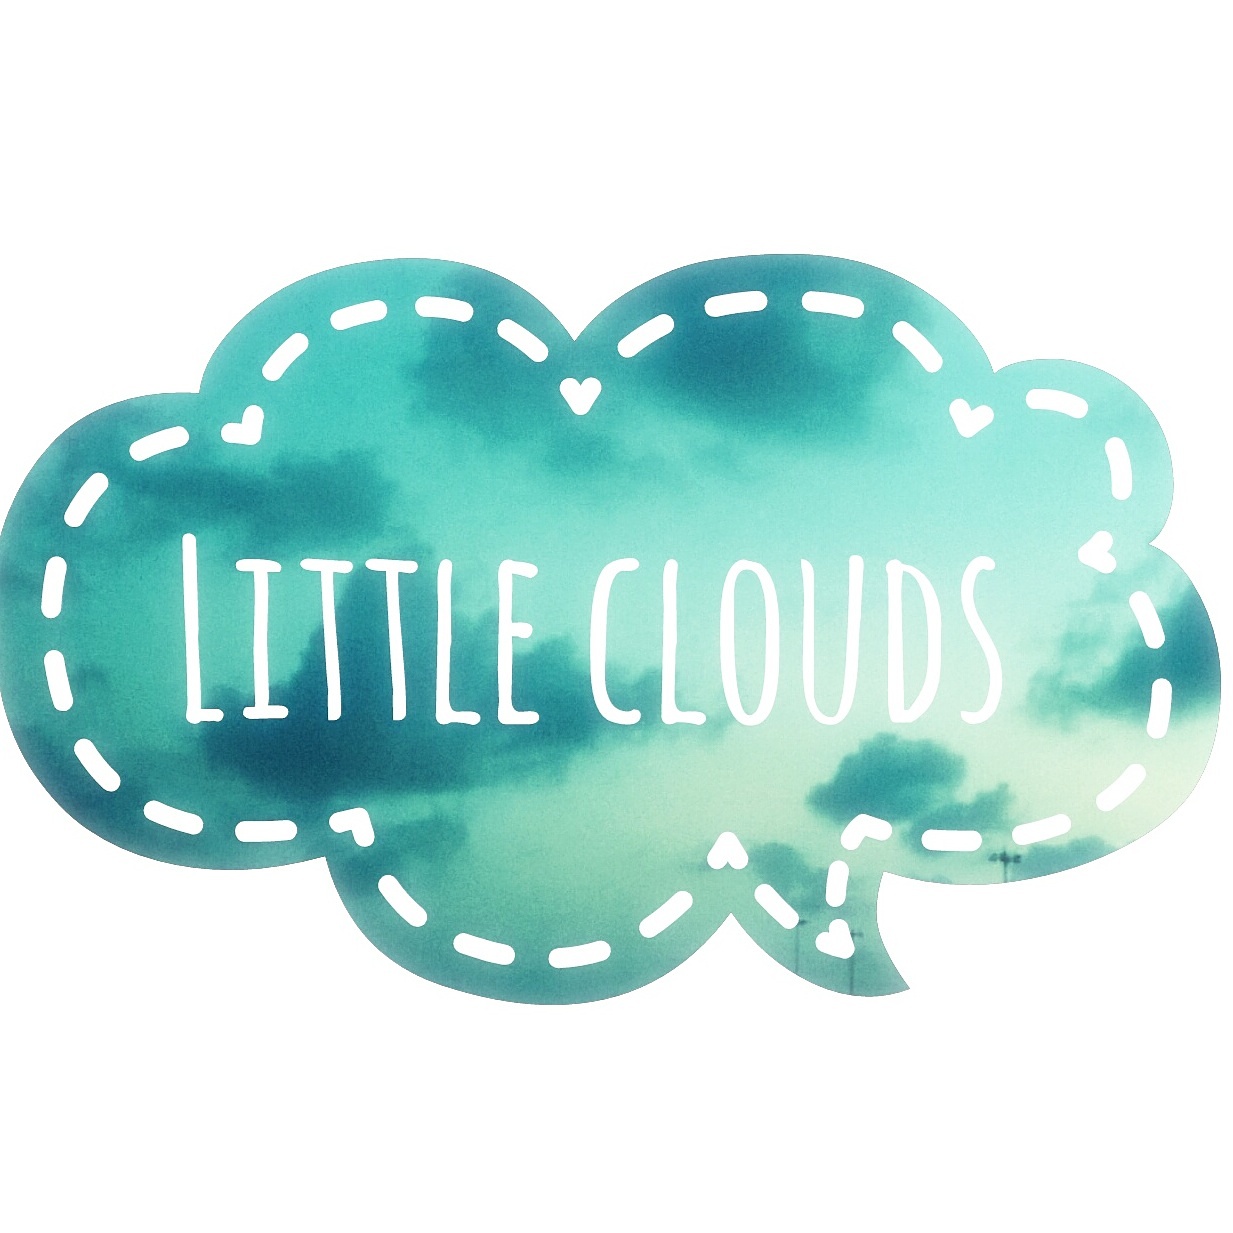 Little Cloud Tales